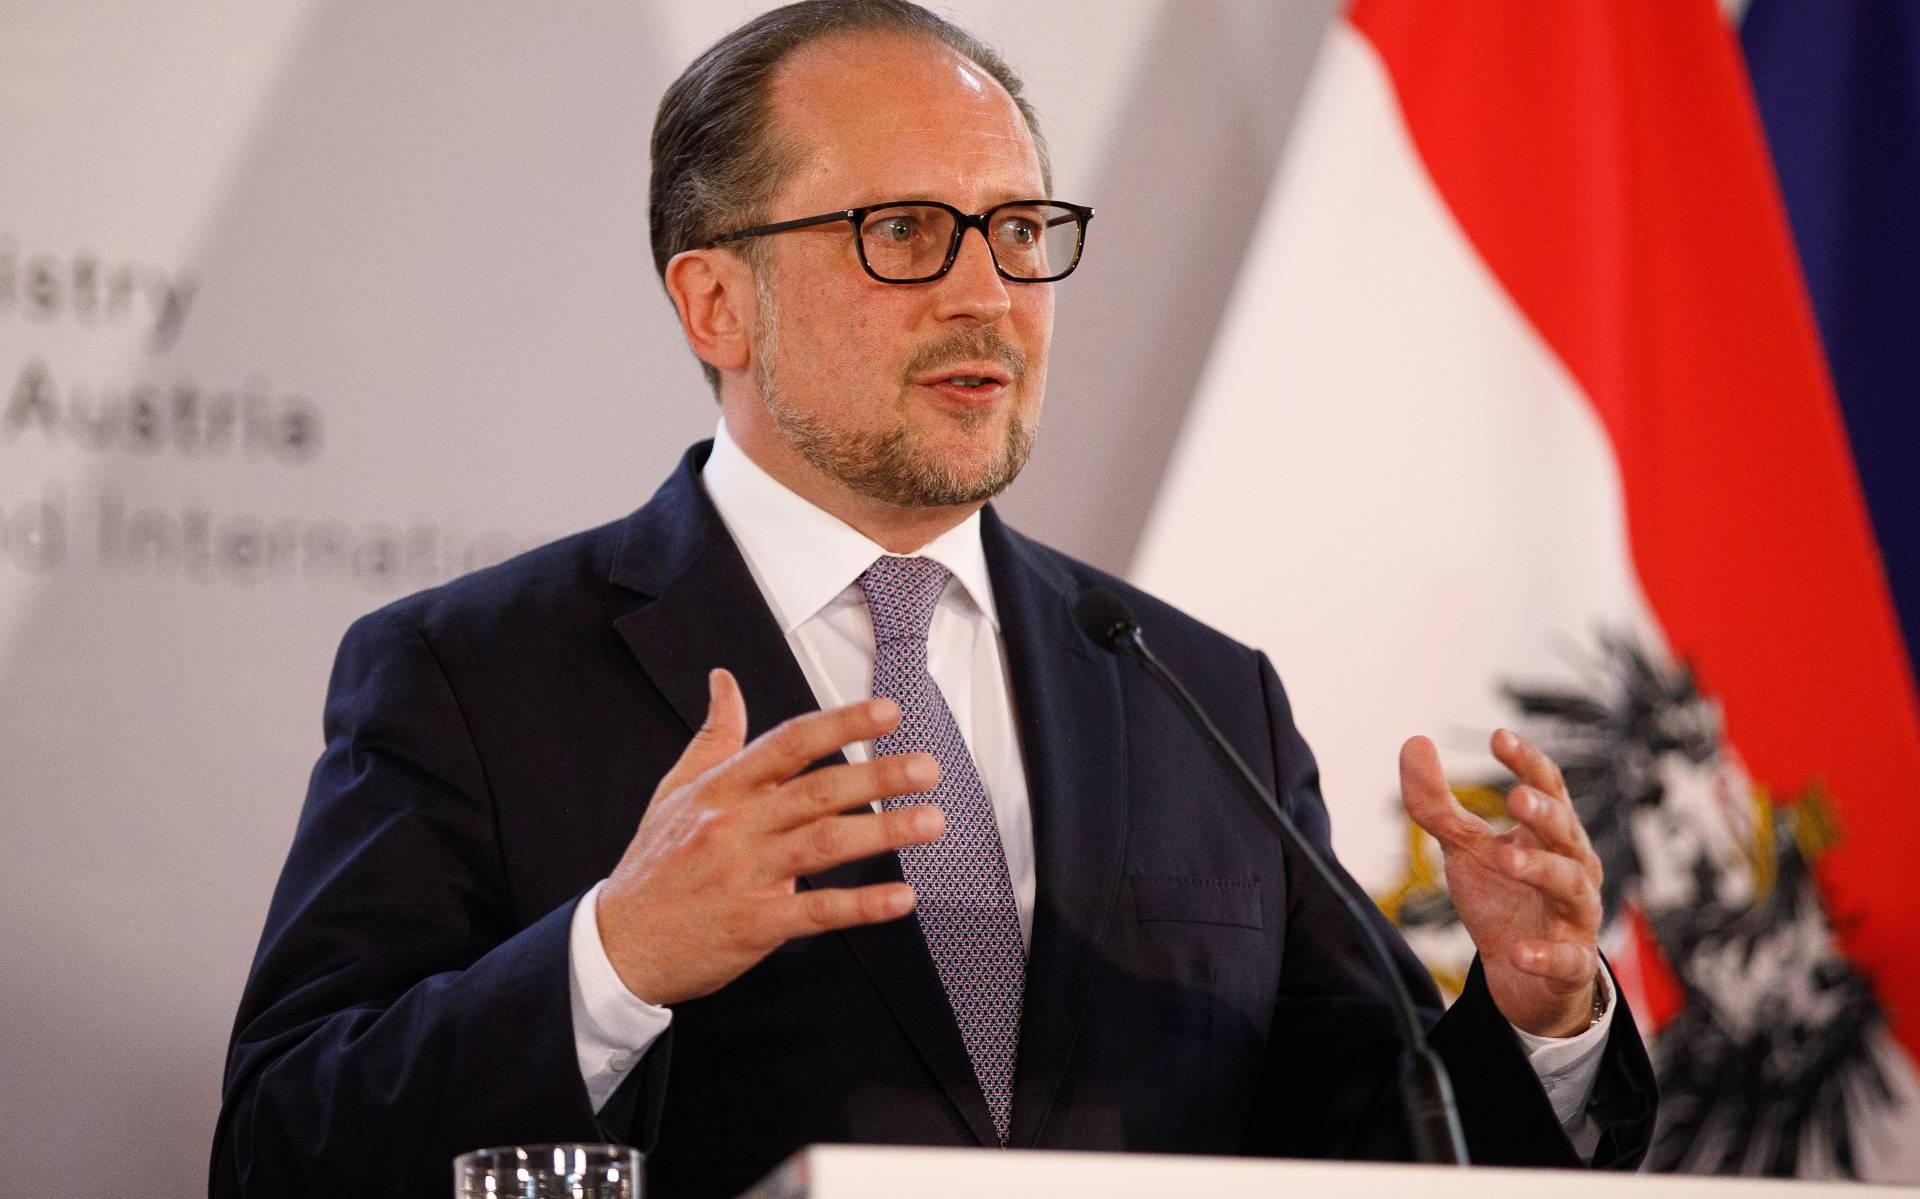 Oostenrijkse minister met corona besmet, regering getest